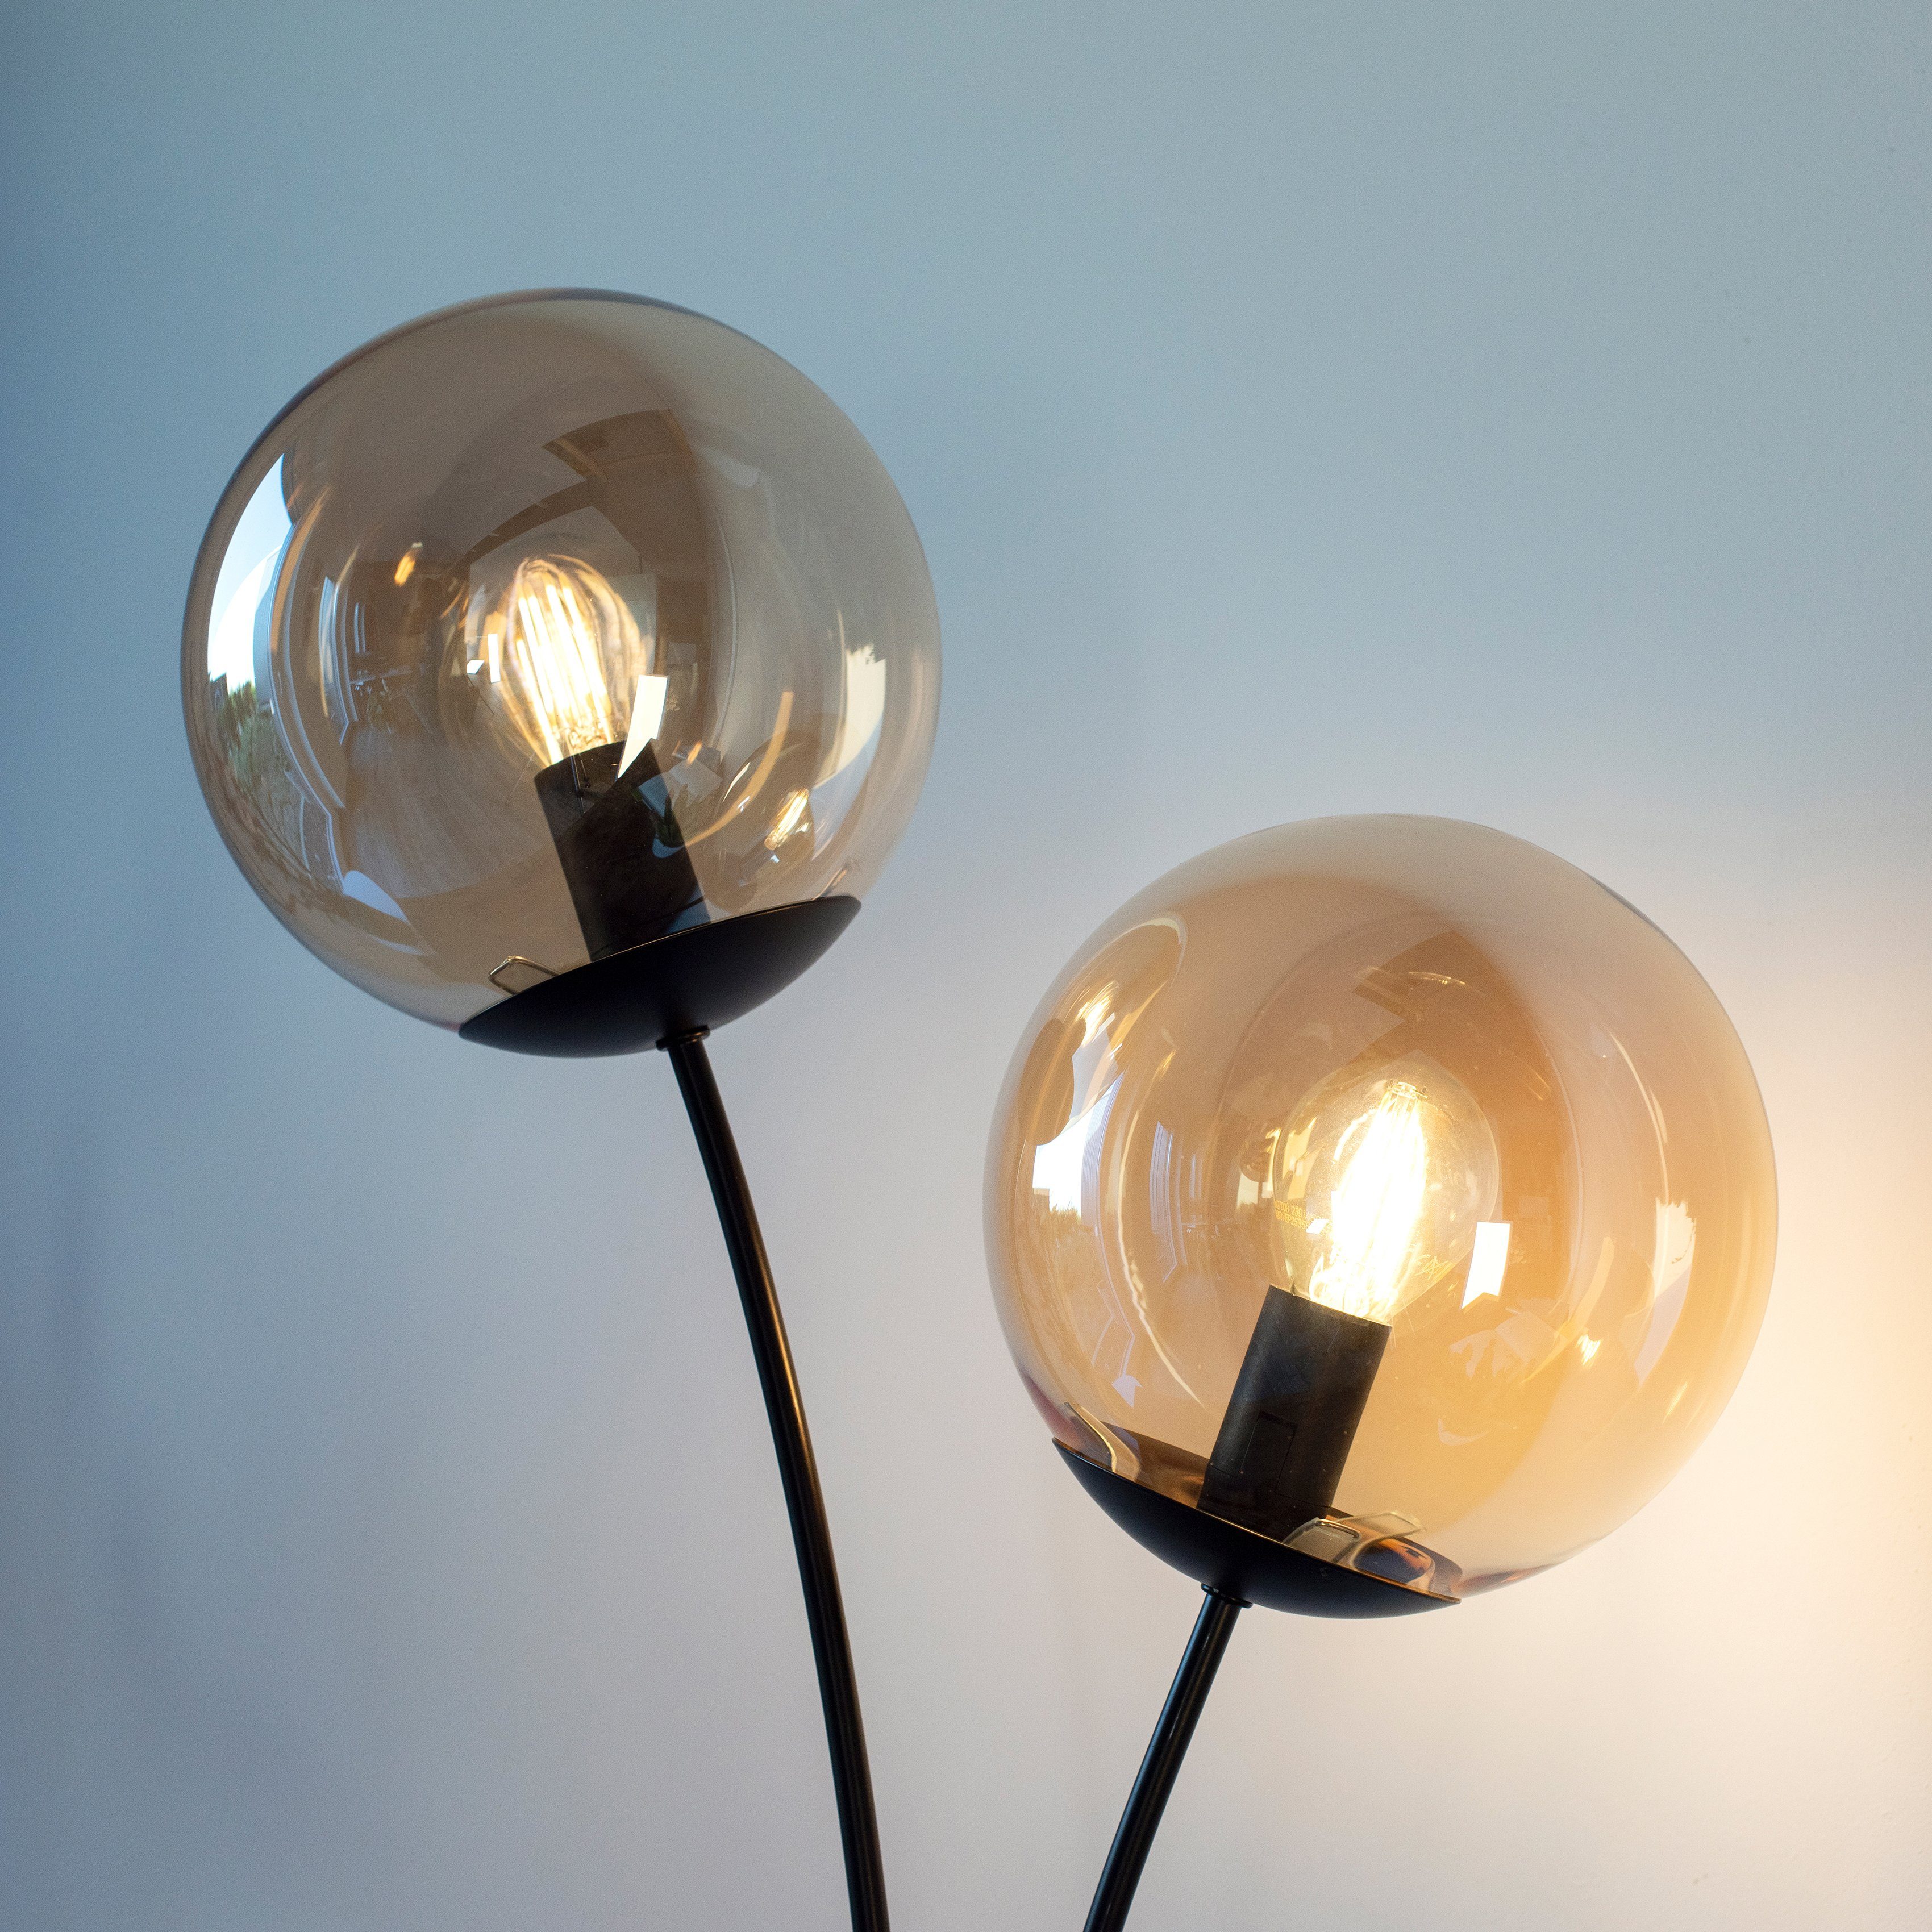 Stehlampe großen schwarz Oberfläche mit Nymölla, amberfarbigen Leuchtmittel, Ein-/Ausschalter, ohne andas Glaskörpern, lackiert